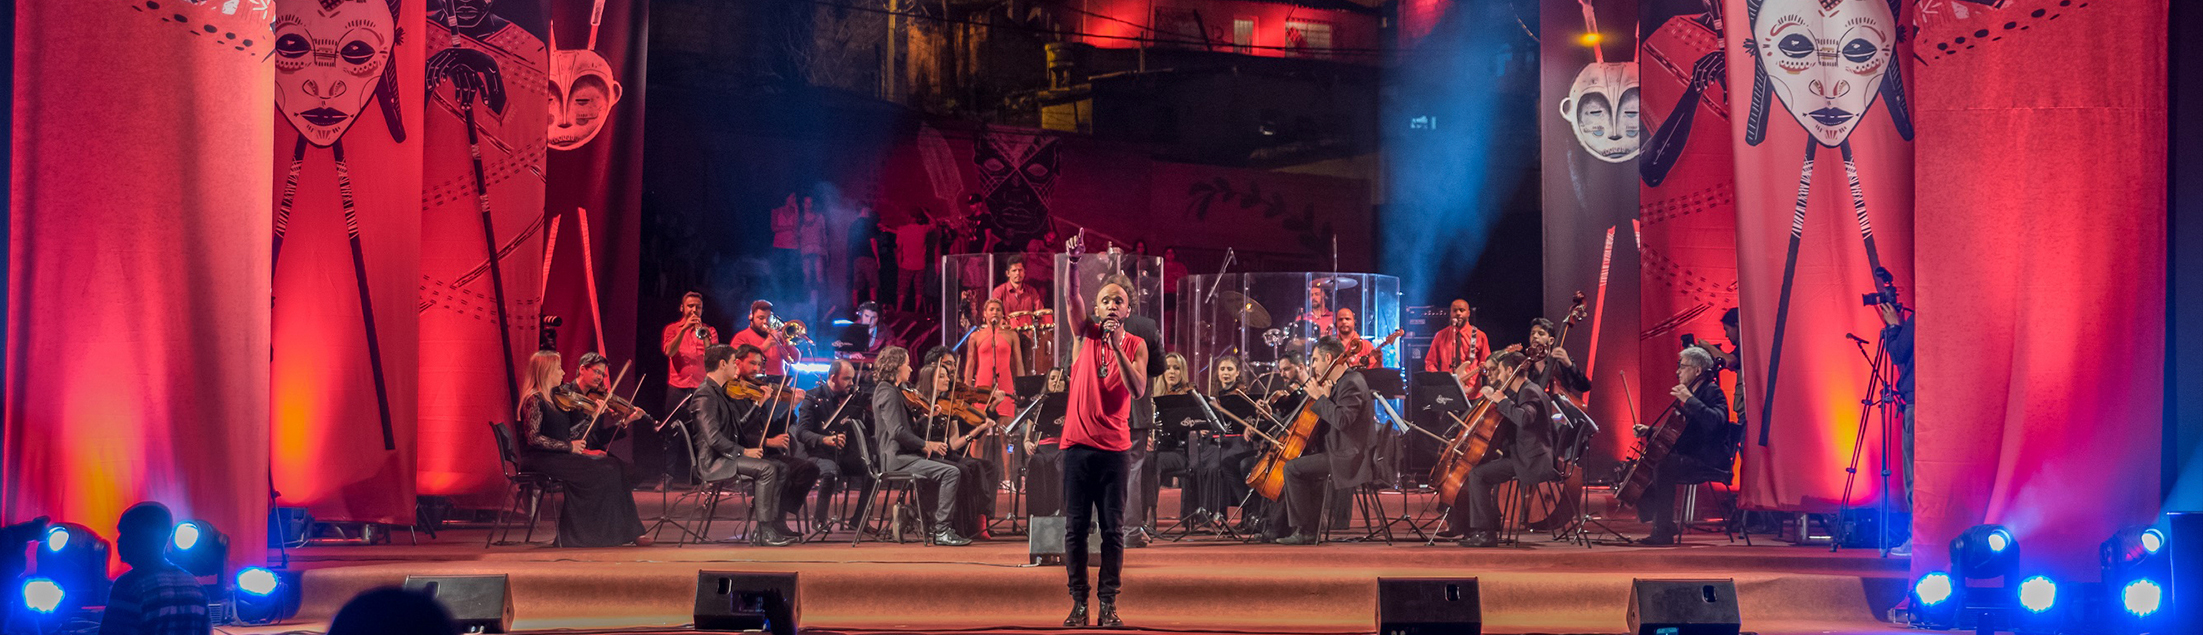 Flávio Renegado e Orquestra Ouro Preto apresentam 'Suíte Masai'